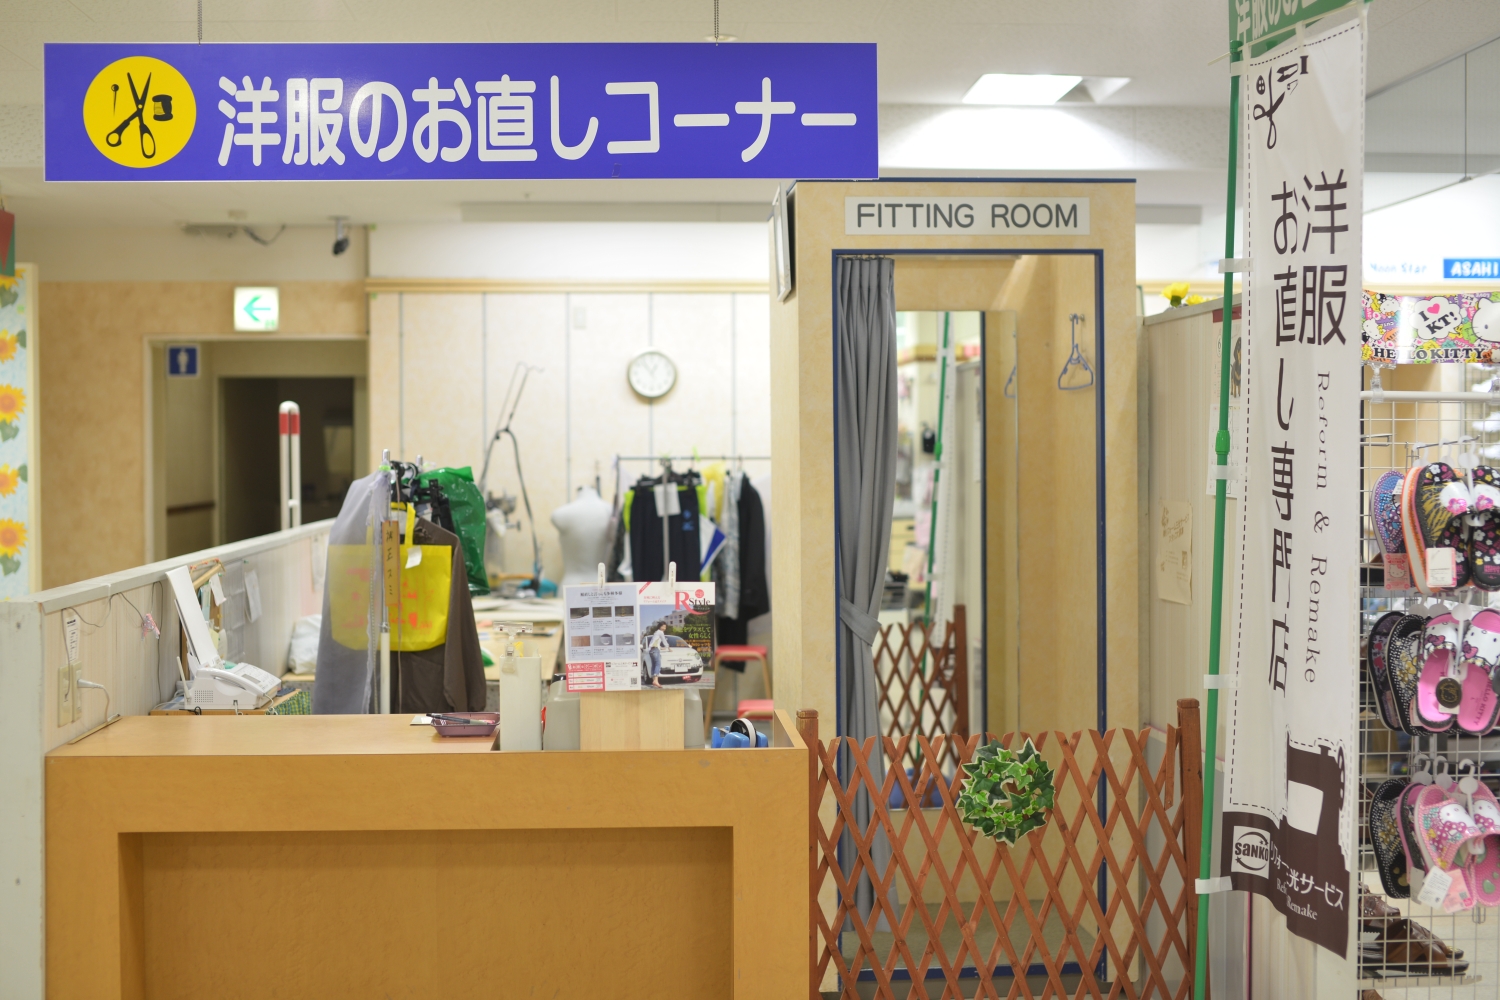 串木野店は当分のあいだ臨時休業となります。